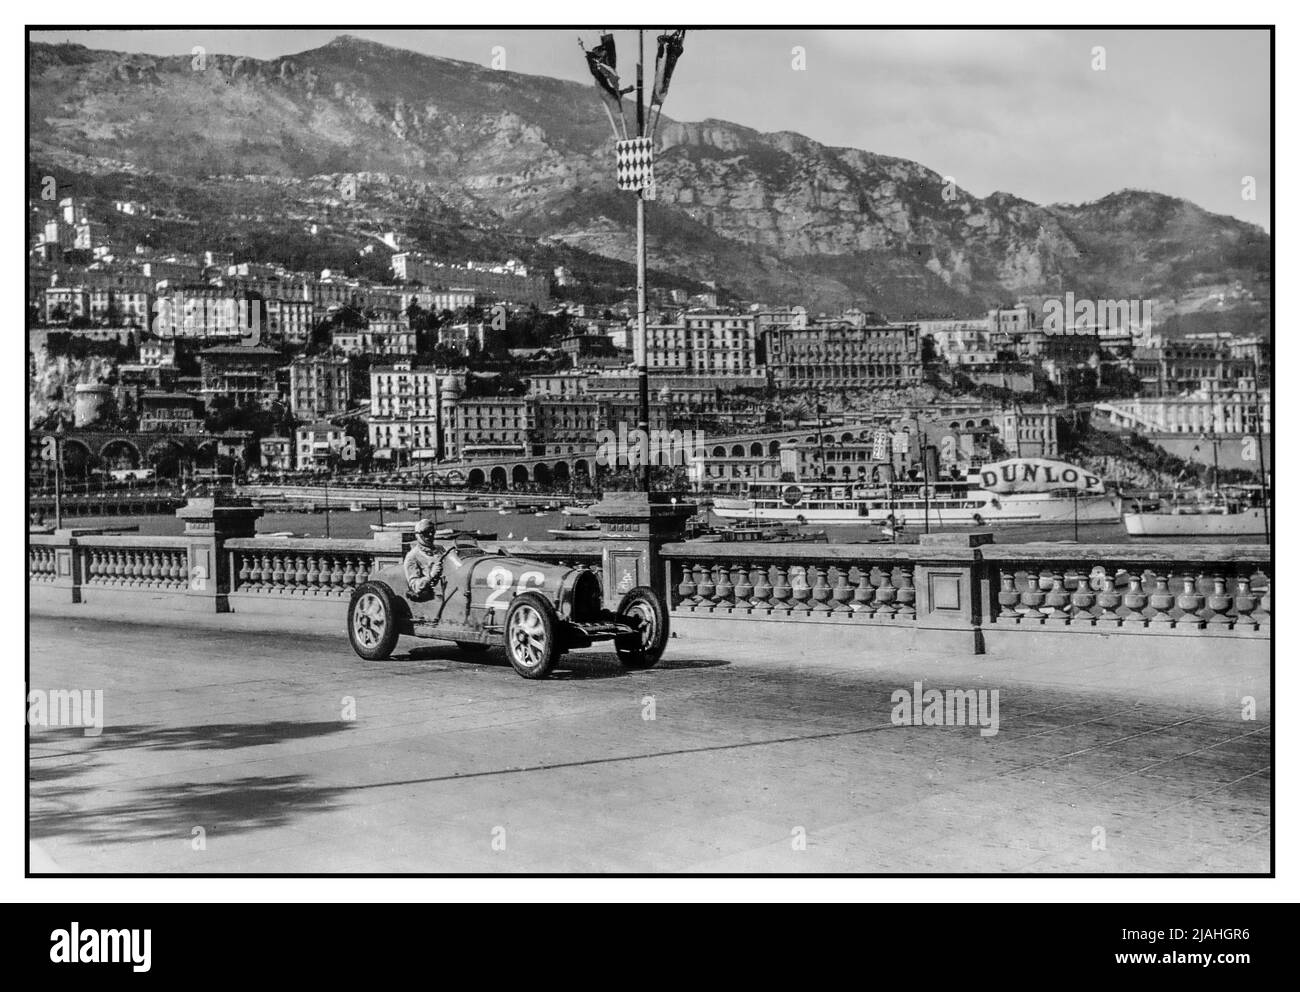 Der Grand Prix von Monaco 1931 mit Achille Varzi fuhr einen Bugatti Nummer 26 mit dem Hafen von Monaco dahinter. Der Grand Prix von Monaco 1931 war ein Grand Prix, der am 19. April 1931 auf dem Circuit de Monaco ausgetragen wurde. Mit 16 Bugattis auf einem Feld von 23 Autos war das Rennen fast ein Single-Make-Rennen. Zu den 16 gehörten vier Fabrikteams vom Typ 51, die vom monegassischen Louis Chiron, dem Italiener Achille Varzi und dem Franzosen Albert Divo und Guy Bouriat angetrieben wurden. Stockfoto